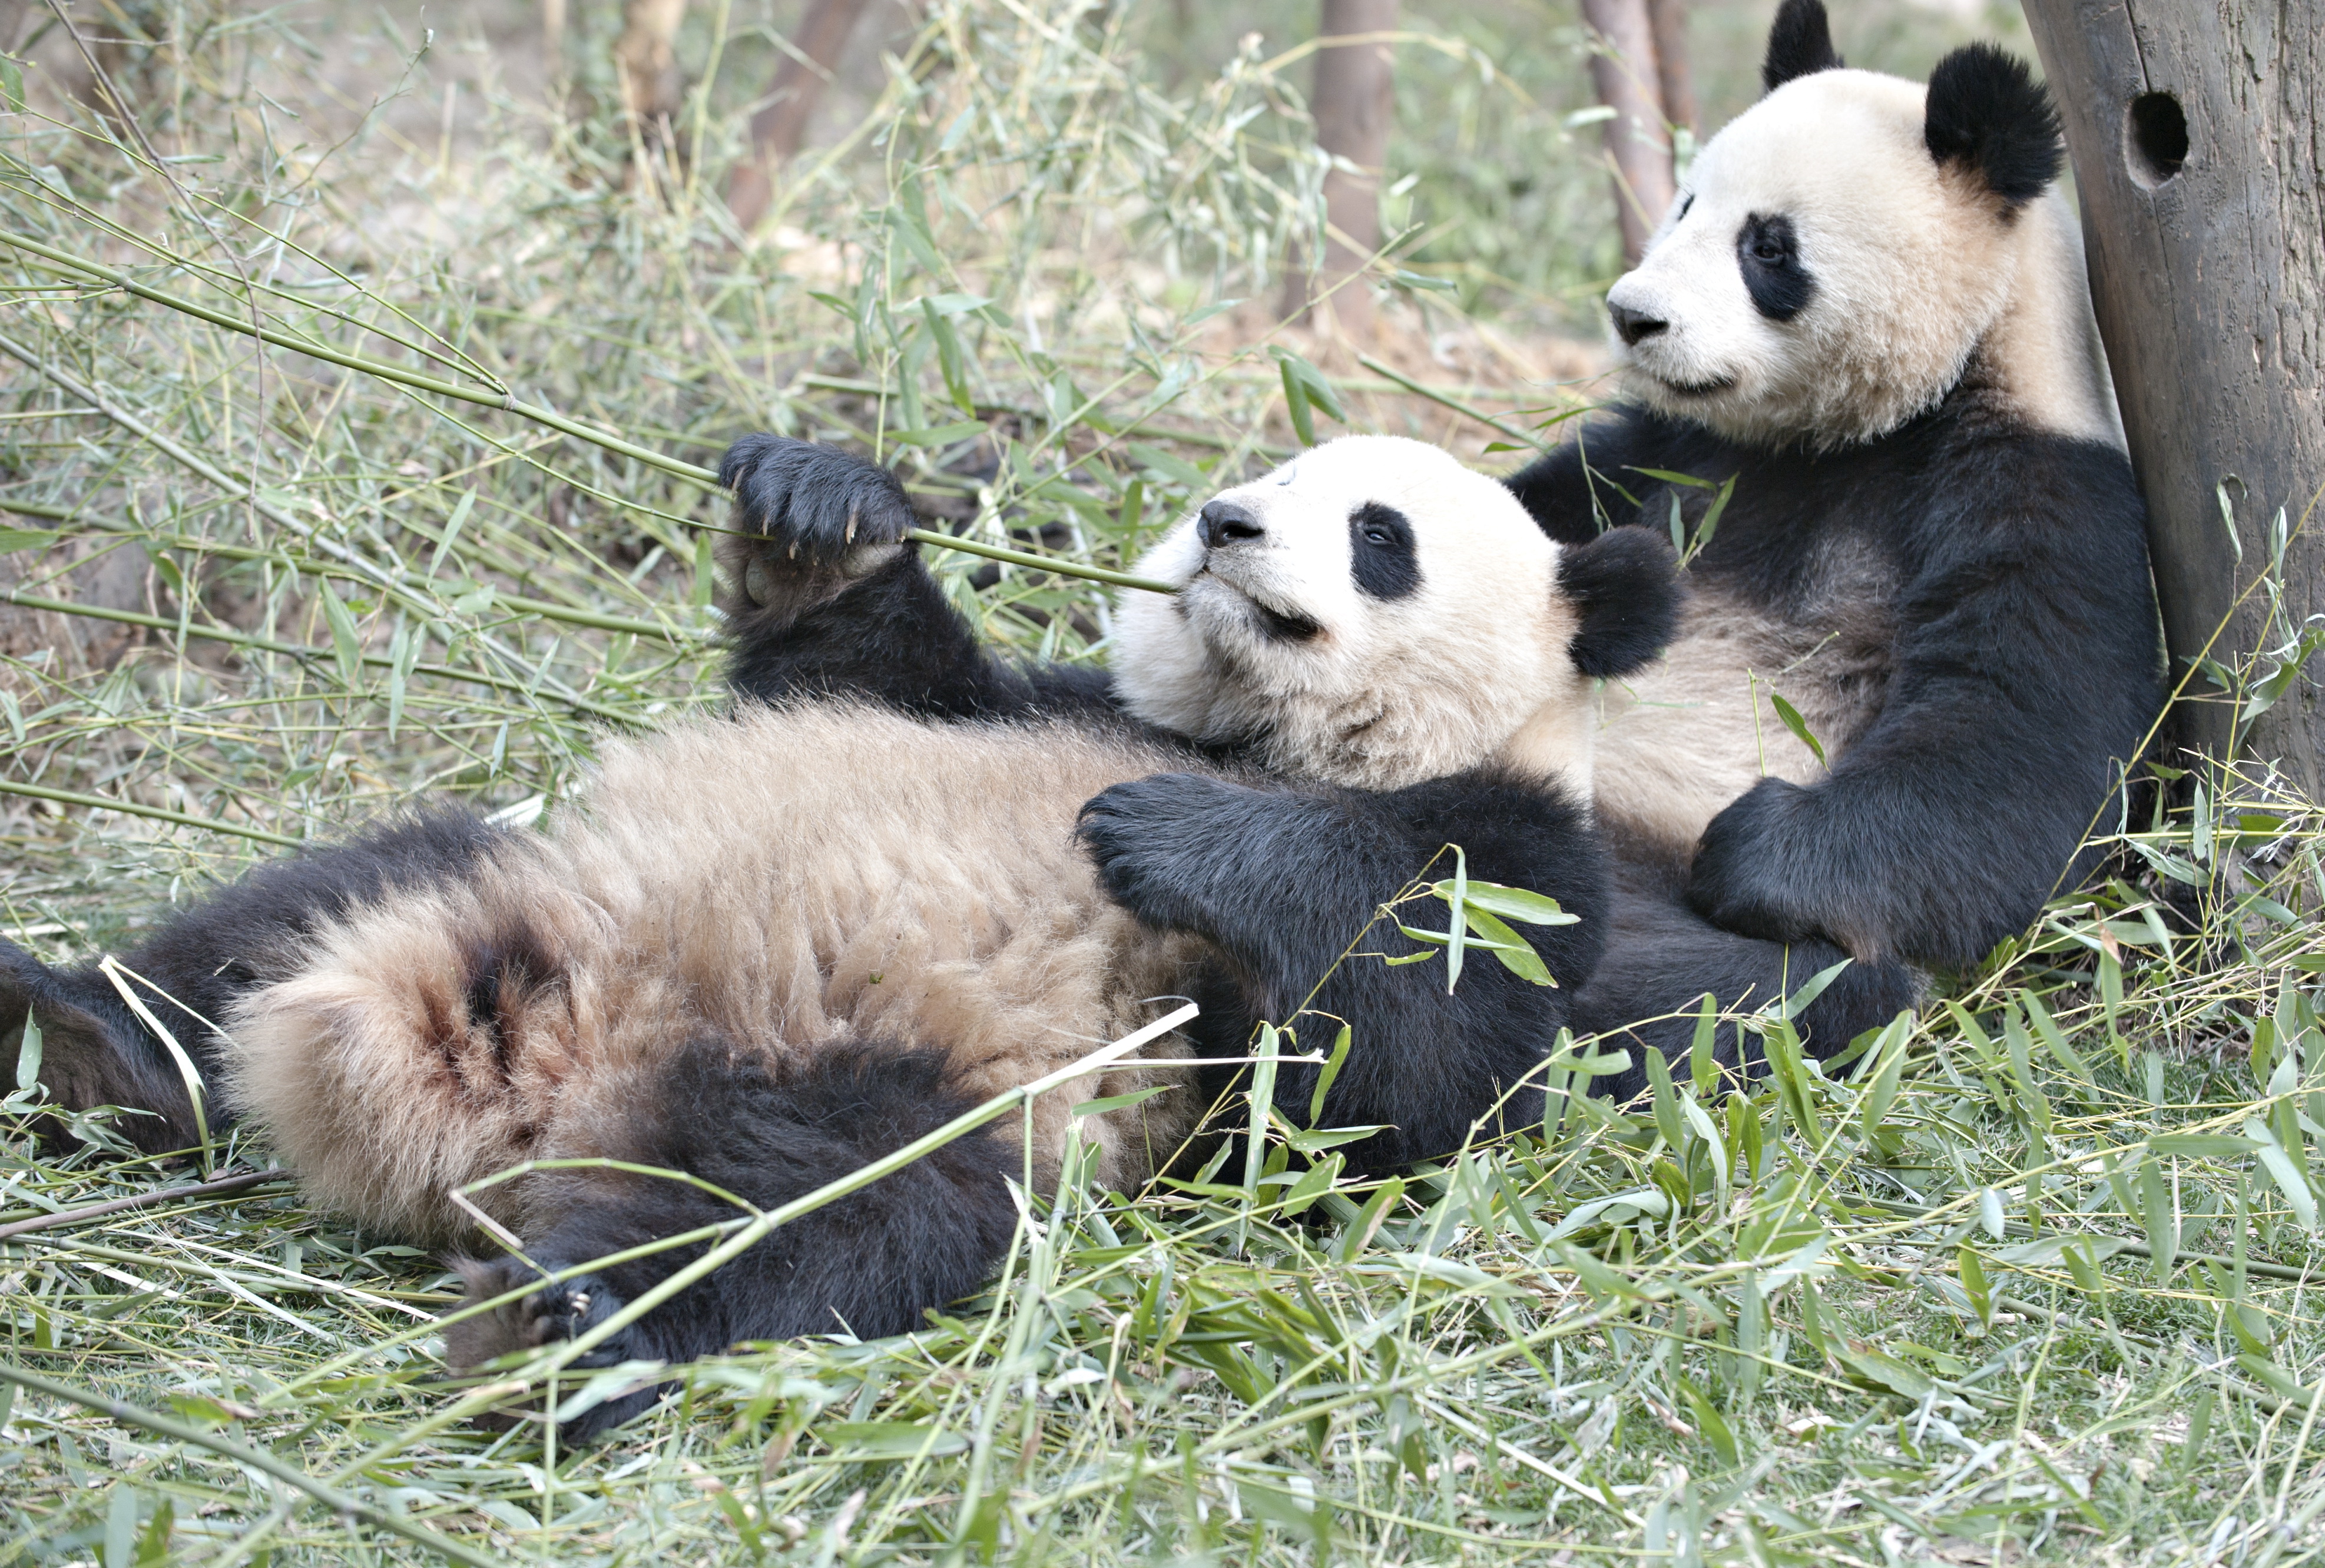 A párkapcsolat rovására mehet a pandaszindróma - Blikk